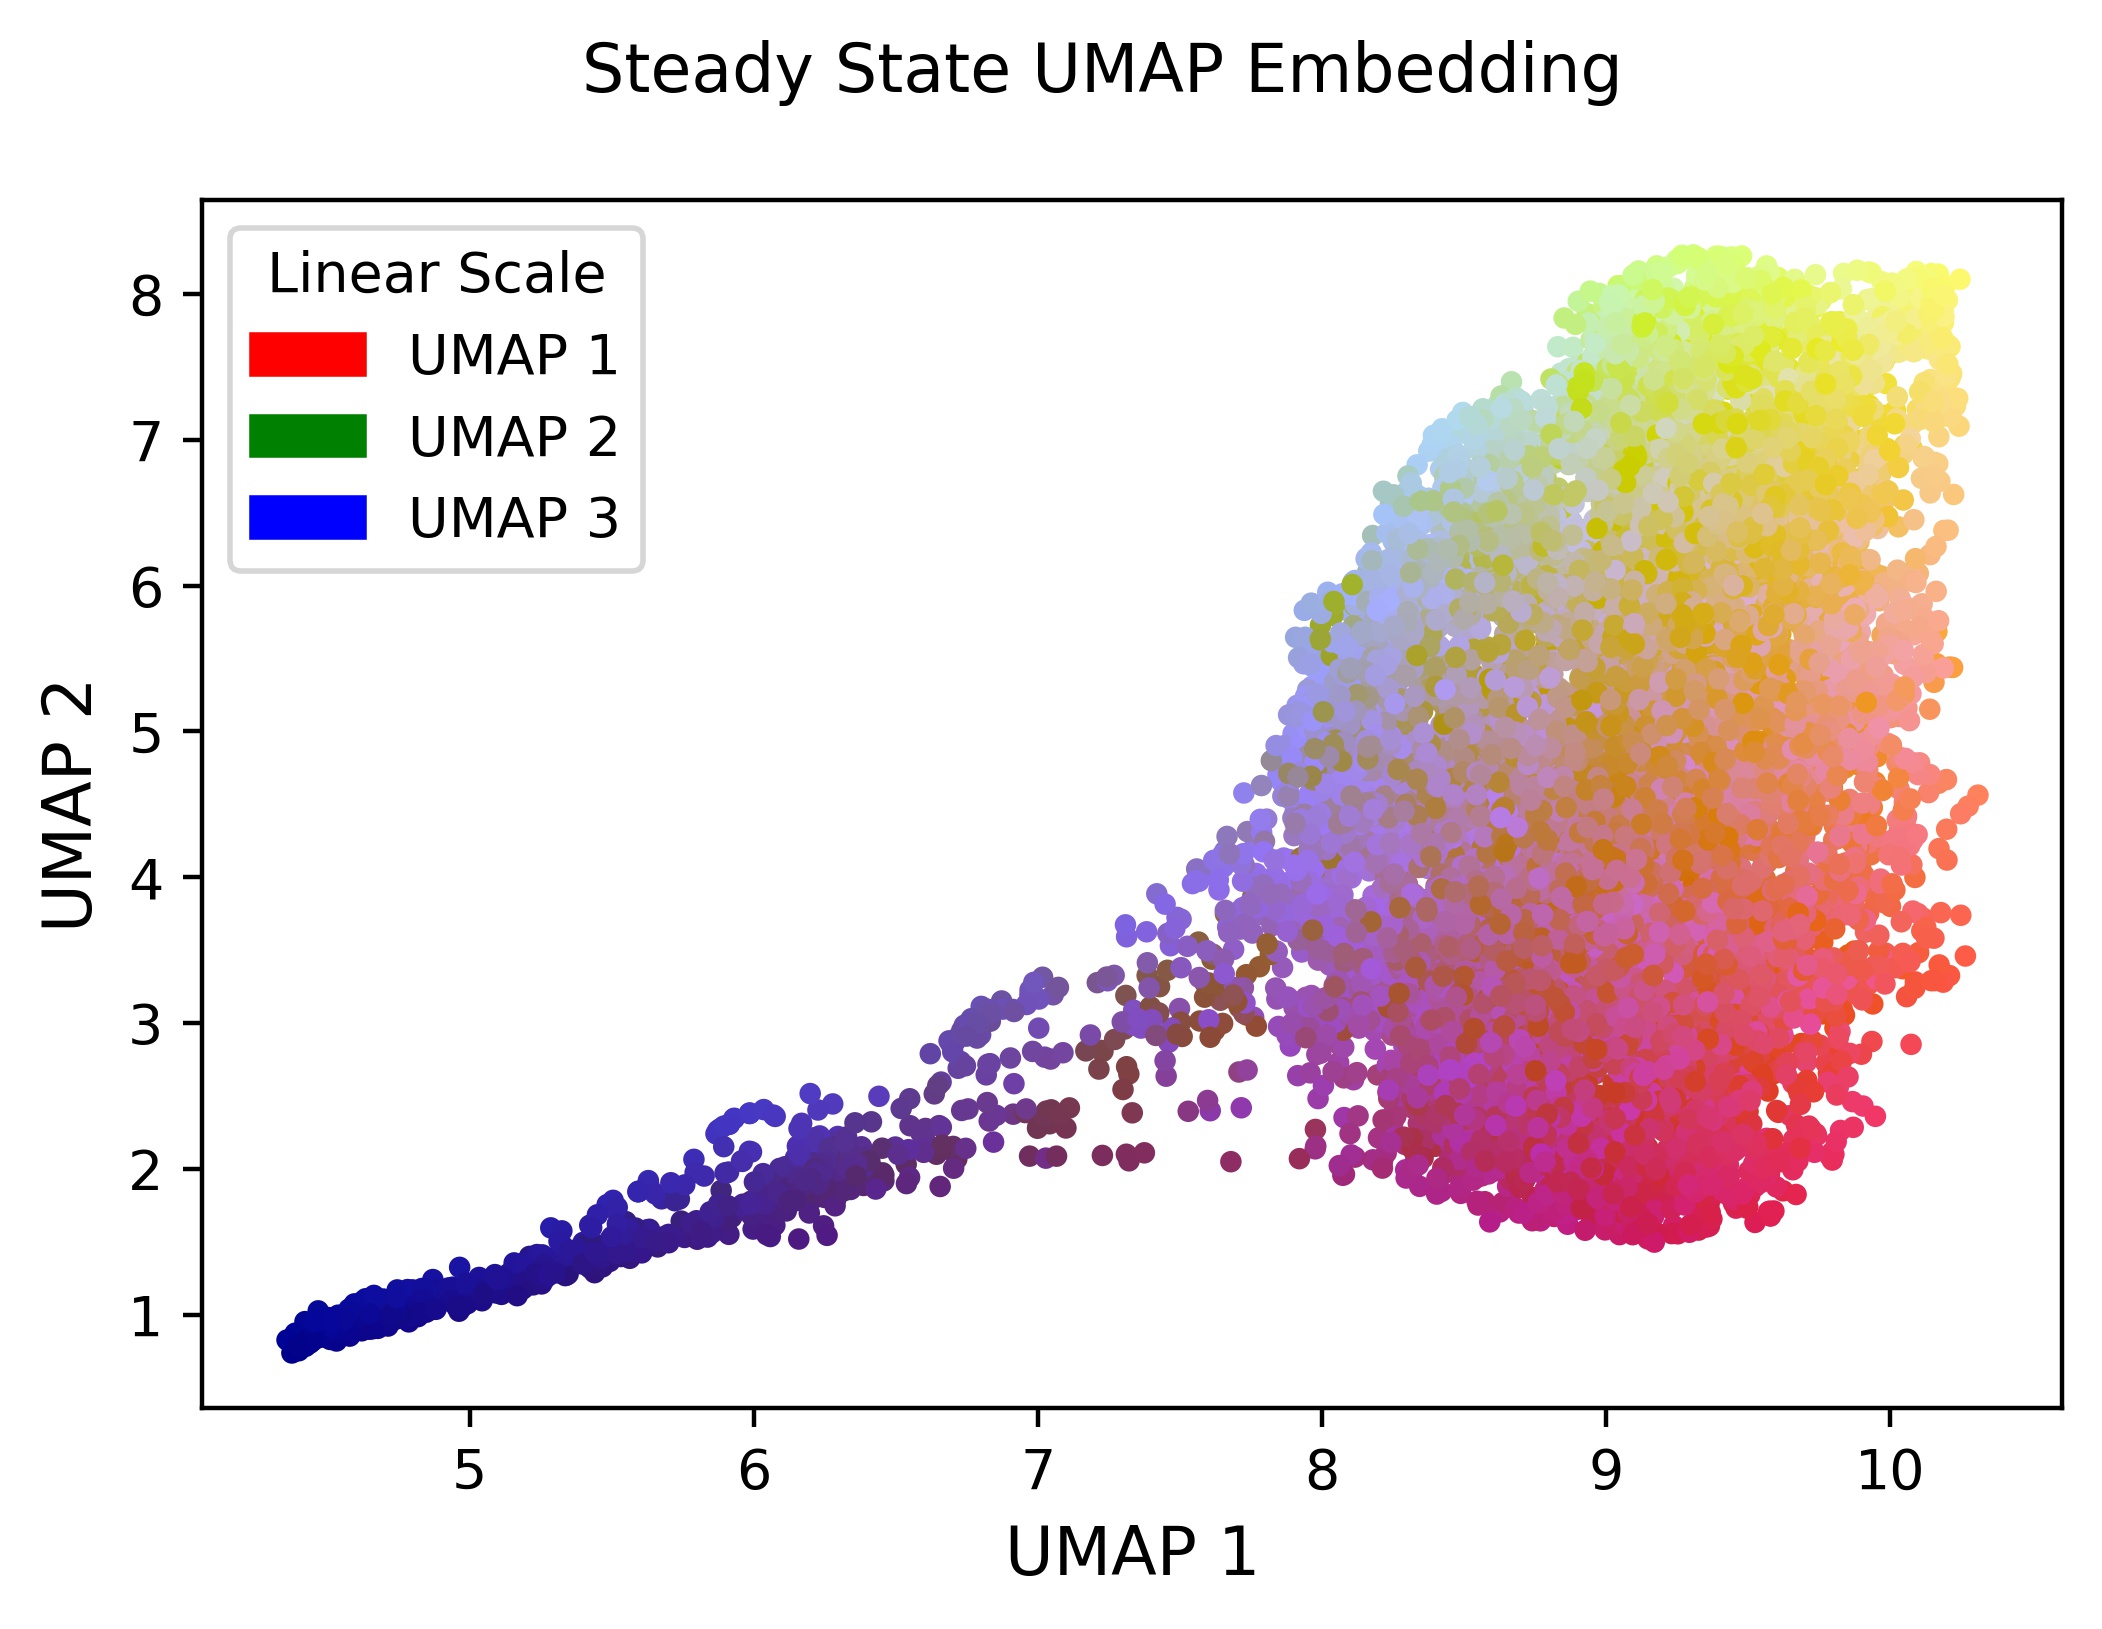 _images/steady-state-UMAP-prototype-001.jpeg